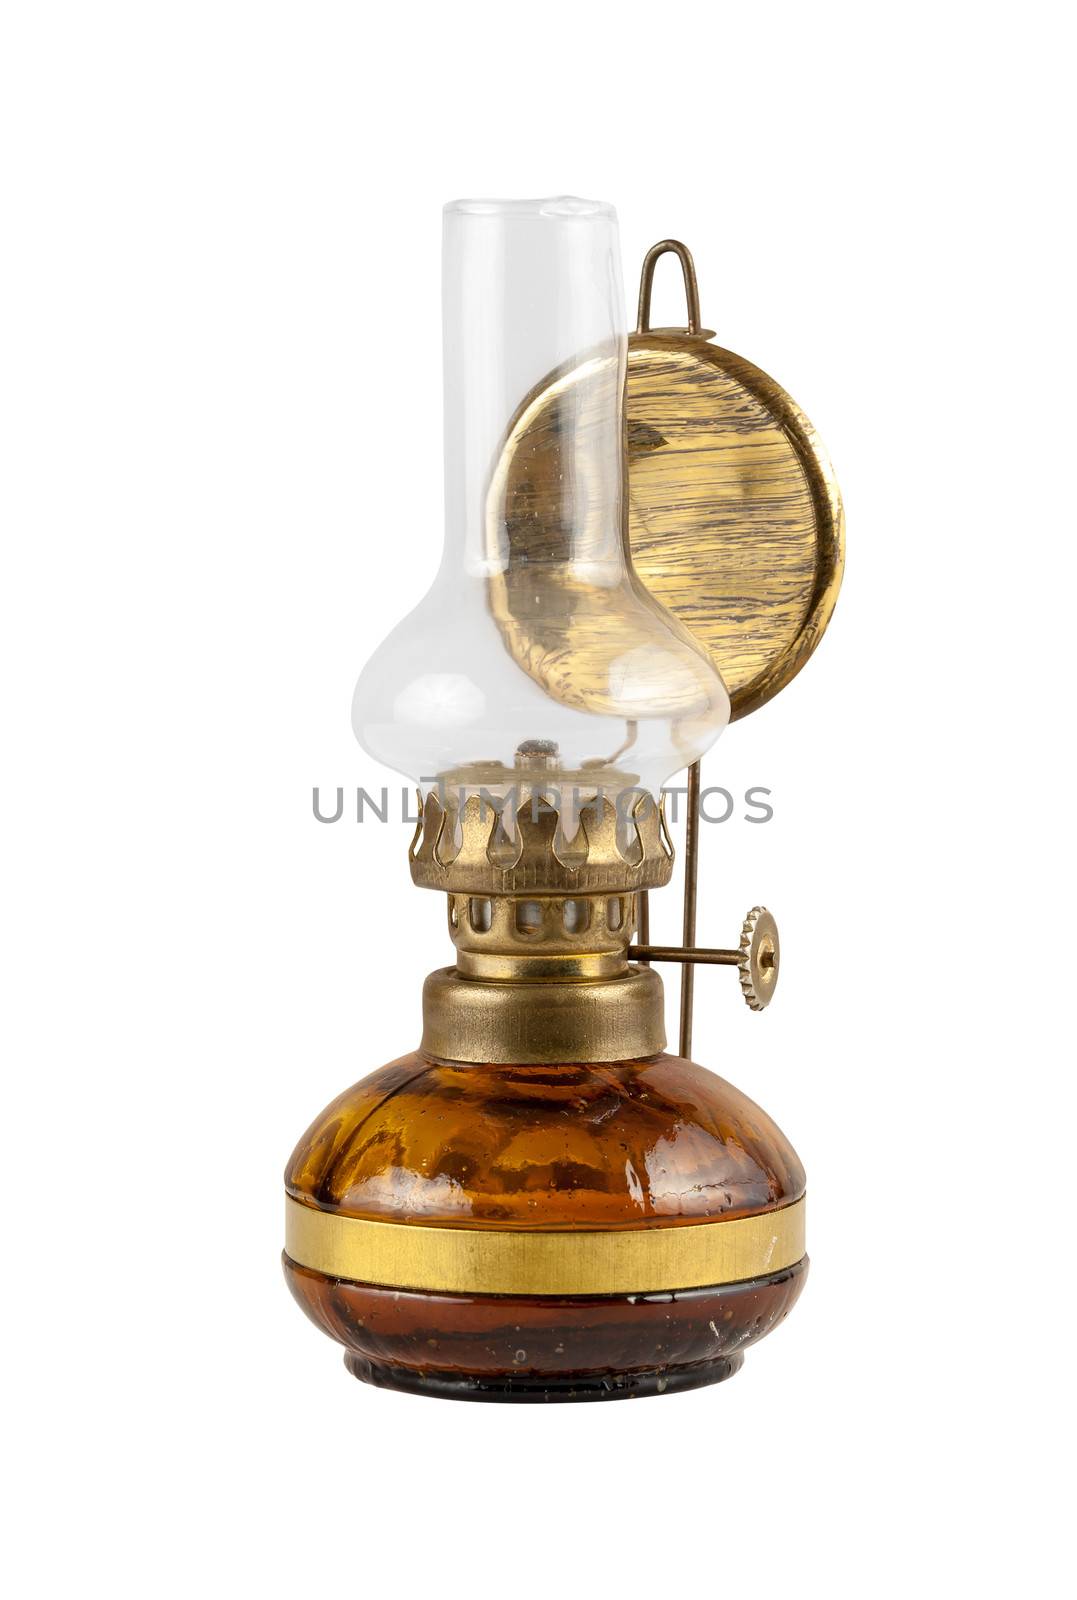 Old kerosene lamp by mkos83